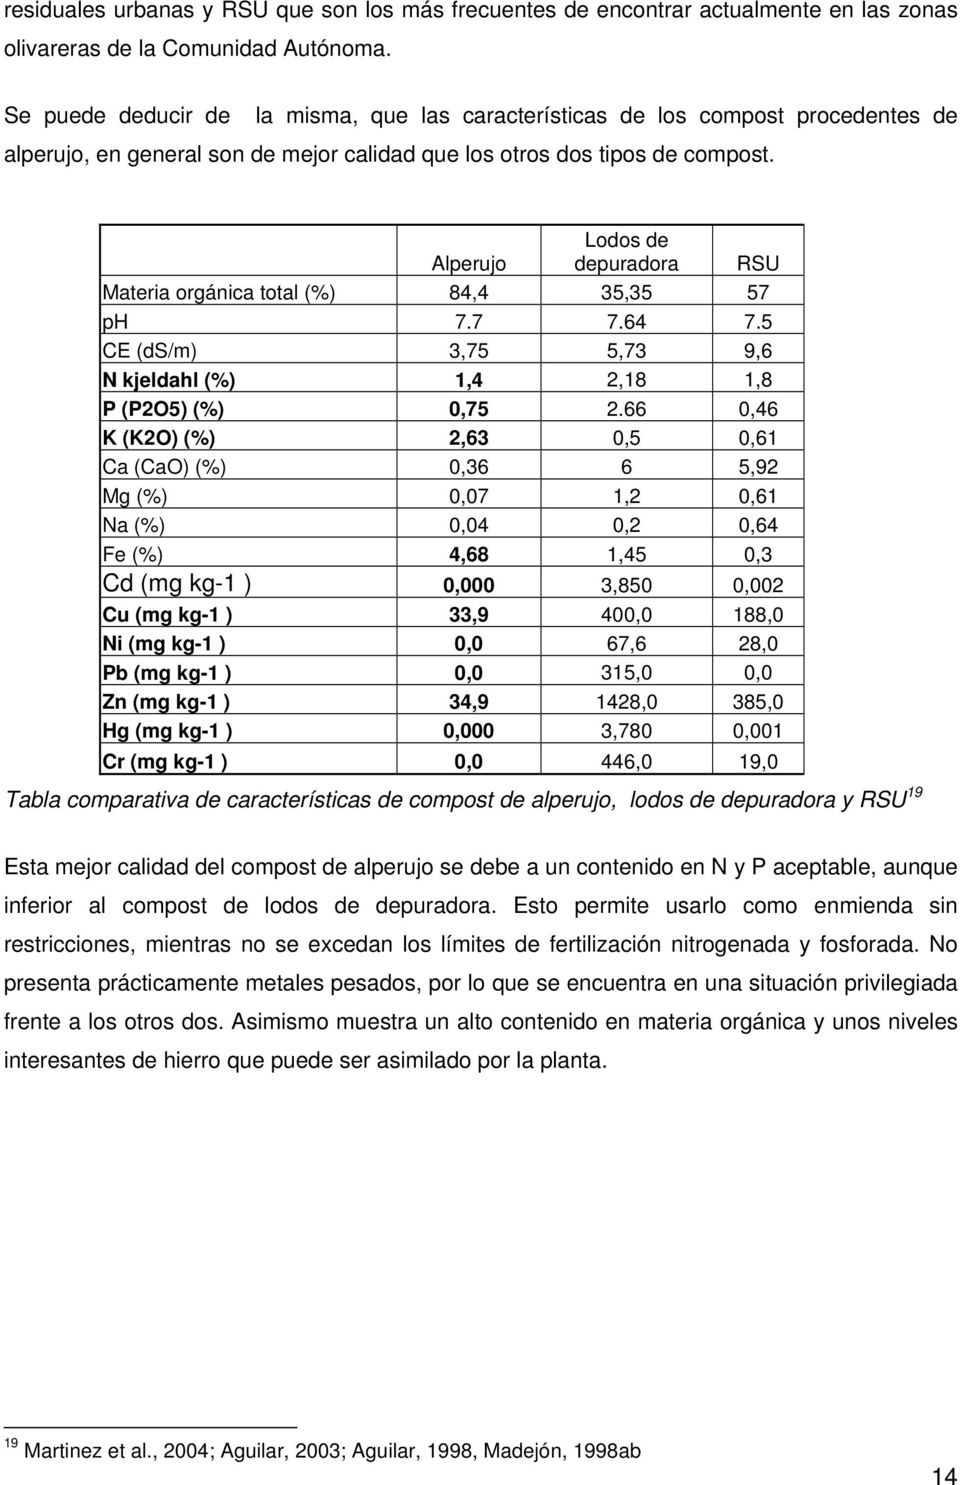 Alperujo Lodos de depuradora RSU Materia orgánica total (%) 84,4 35,35 57 ph 7.7 7.64 7.5 CE (ds/m) 3,75 5,73 9,6 N kjeldahl (%) 1,4 2,18 1,8 P (P2O5) (%) 0,75 2.